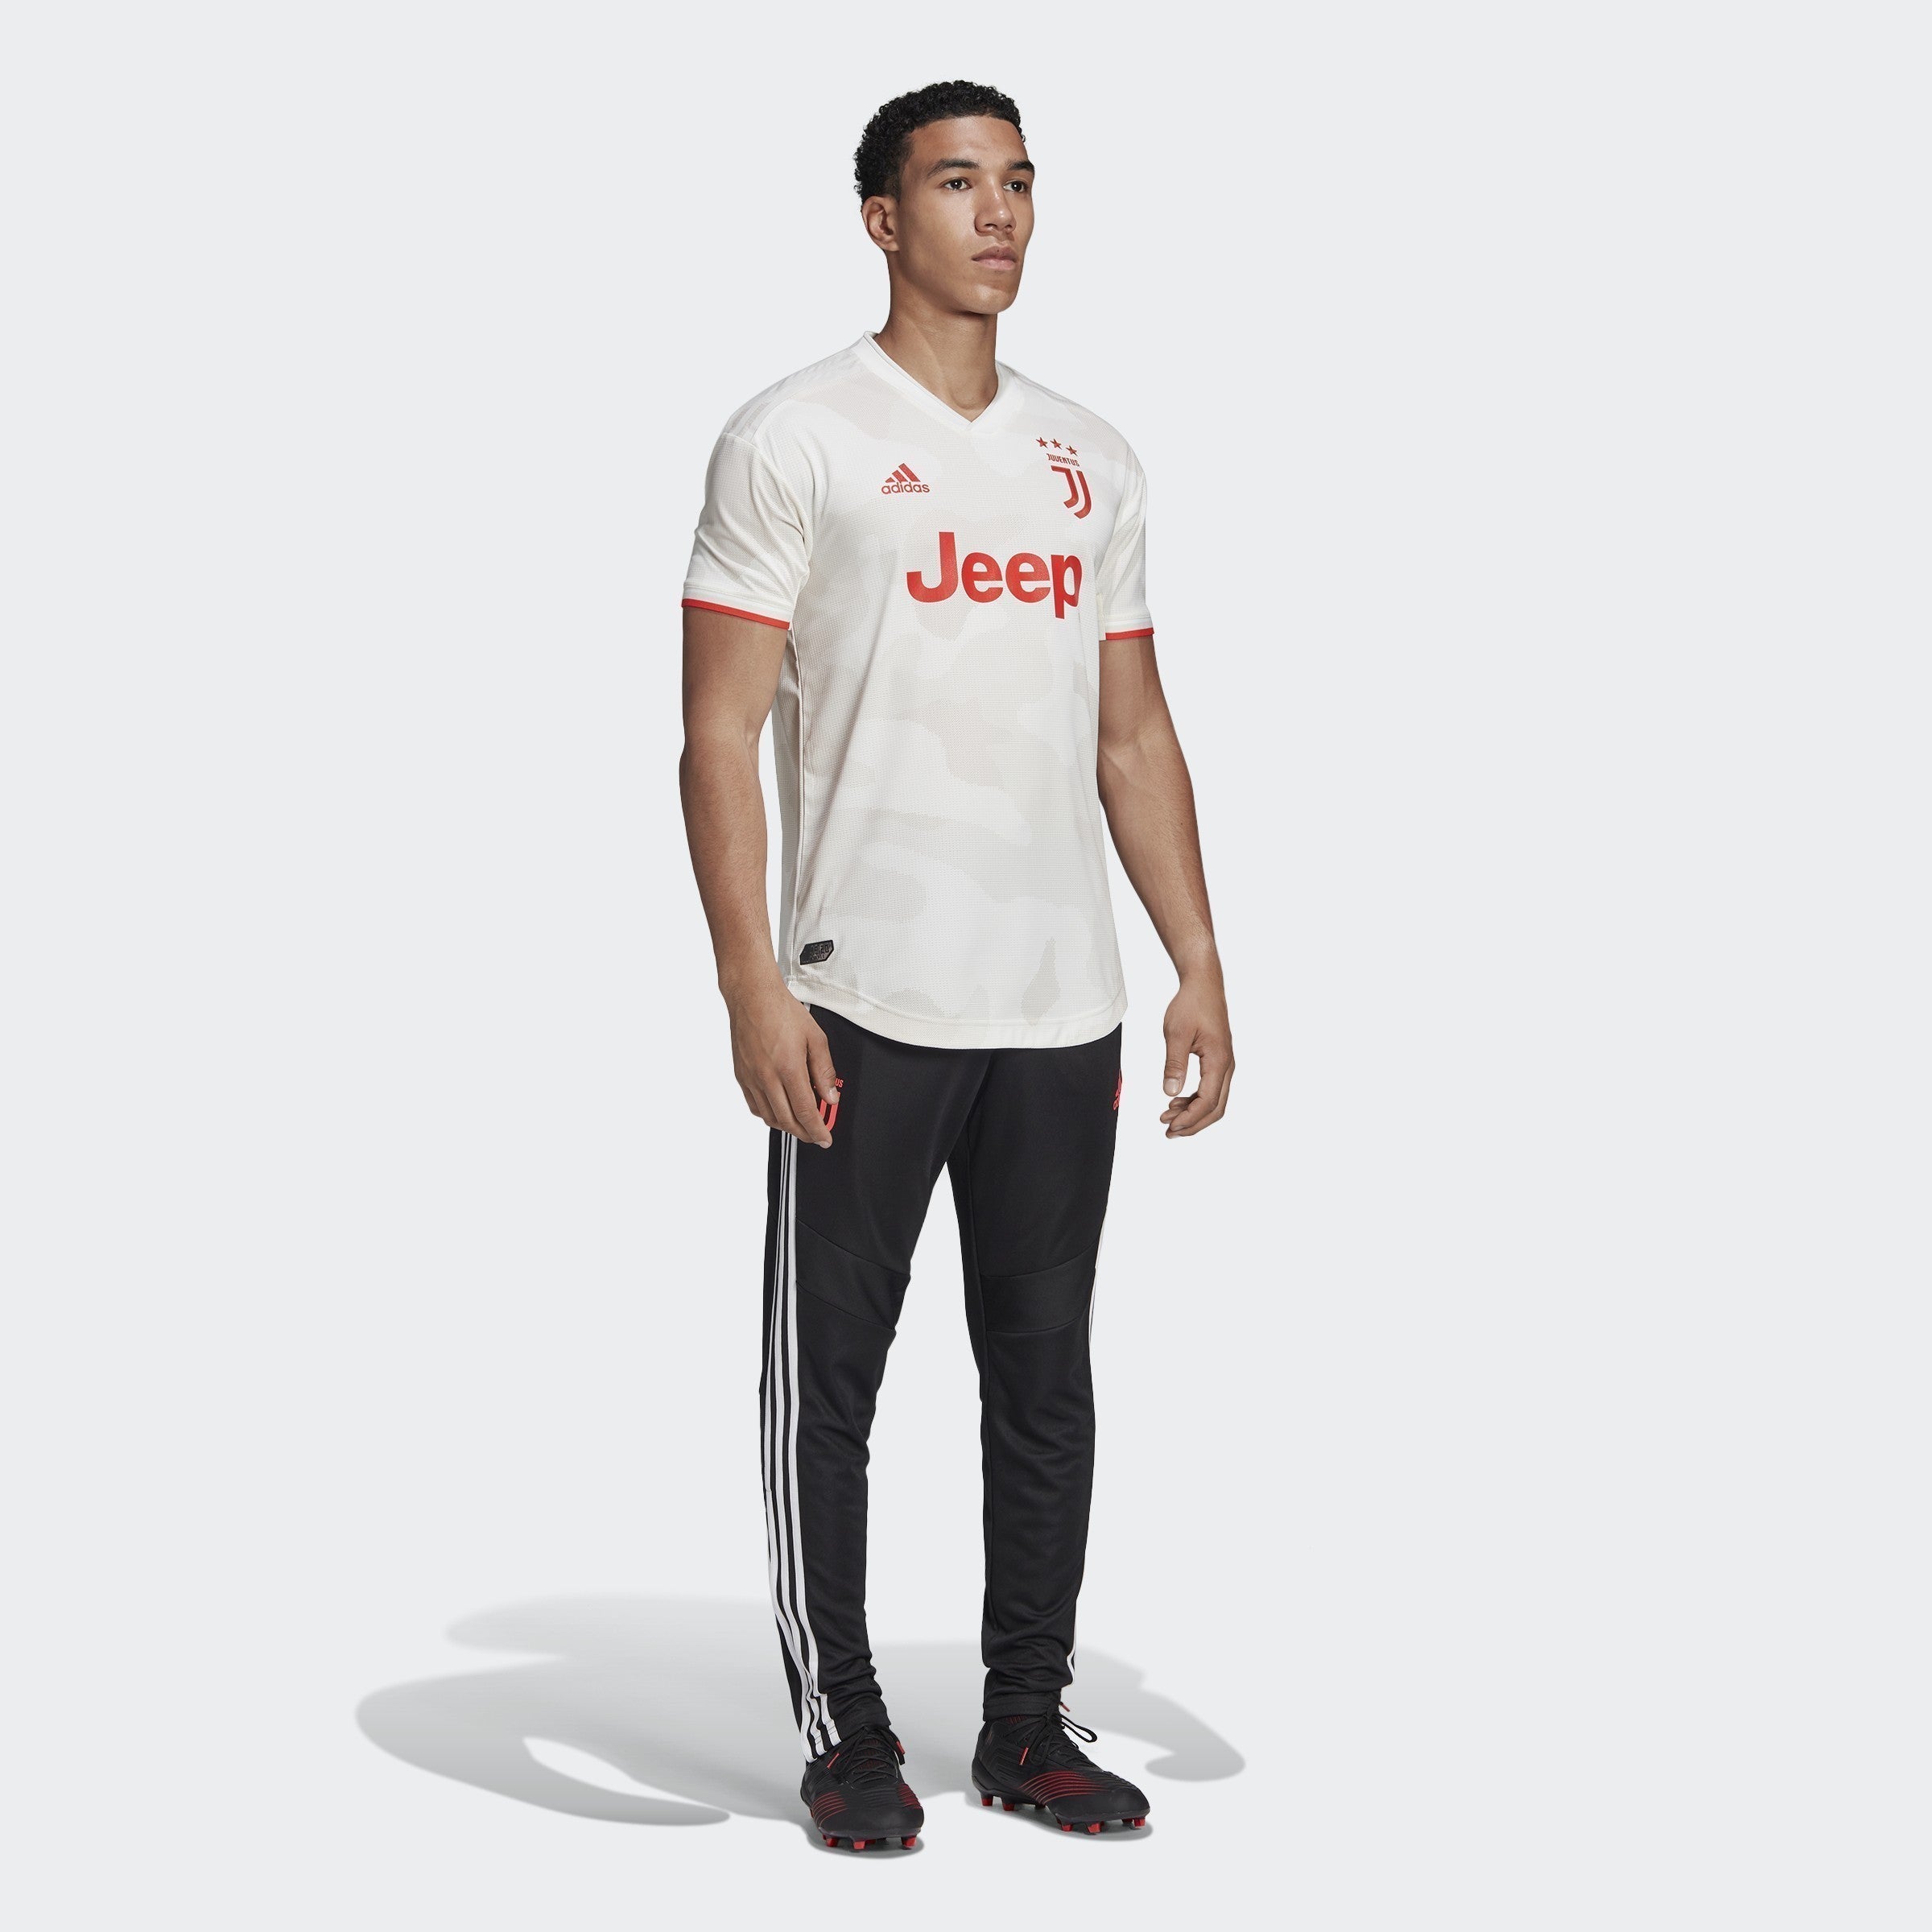 comfort bossen Spelen met Juventus Authentic Away Jersey 19/20